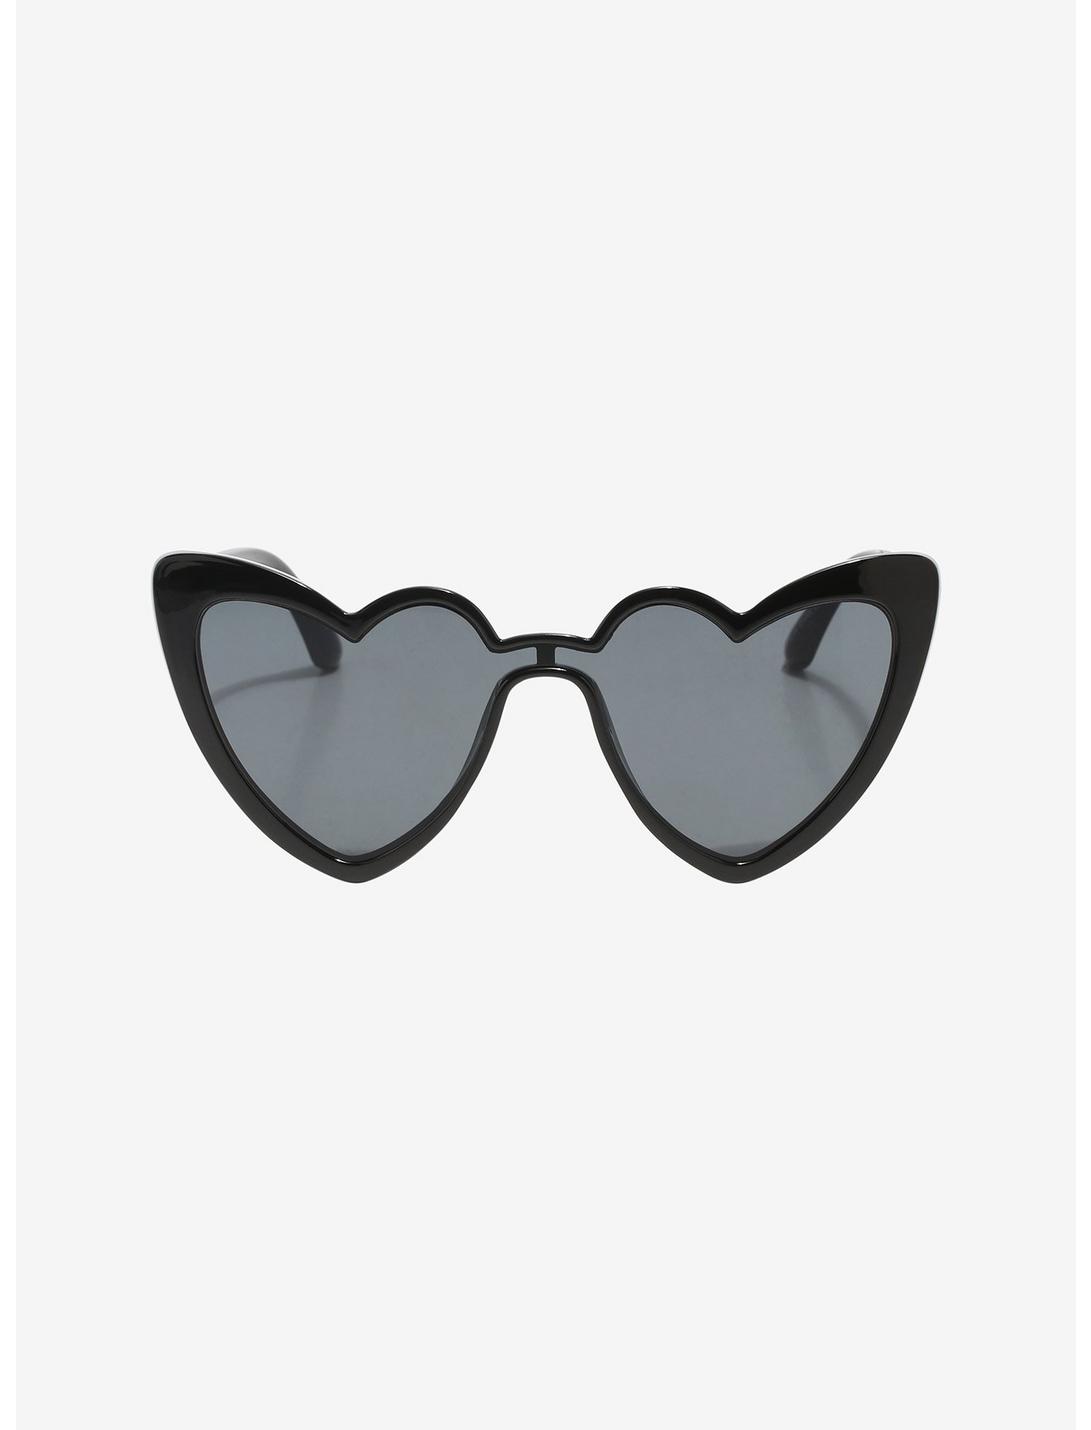 Black Heart Sunglasses, , hi-res